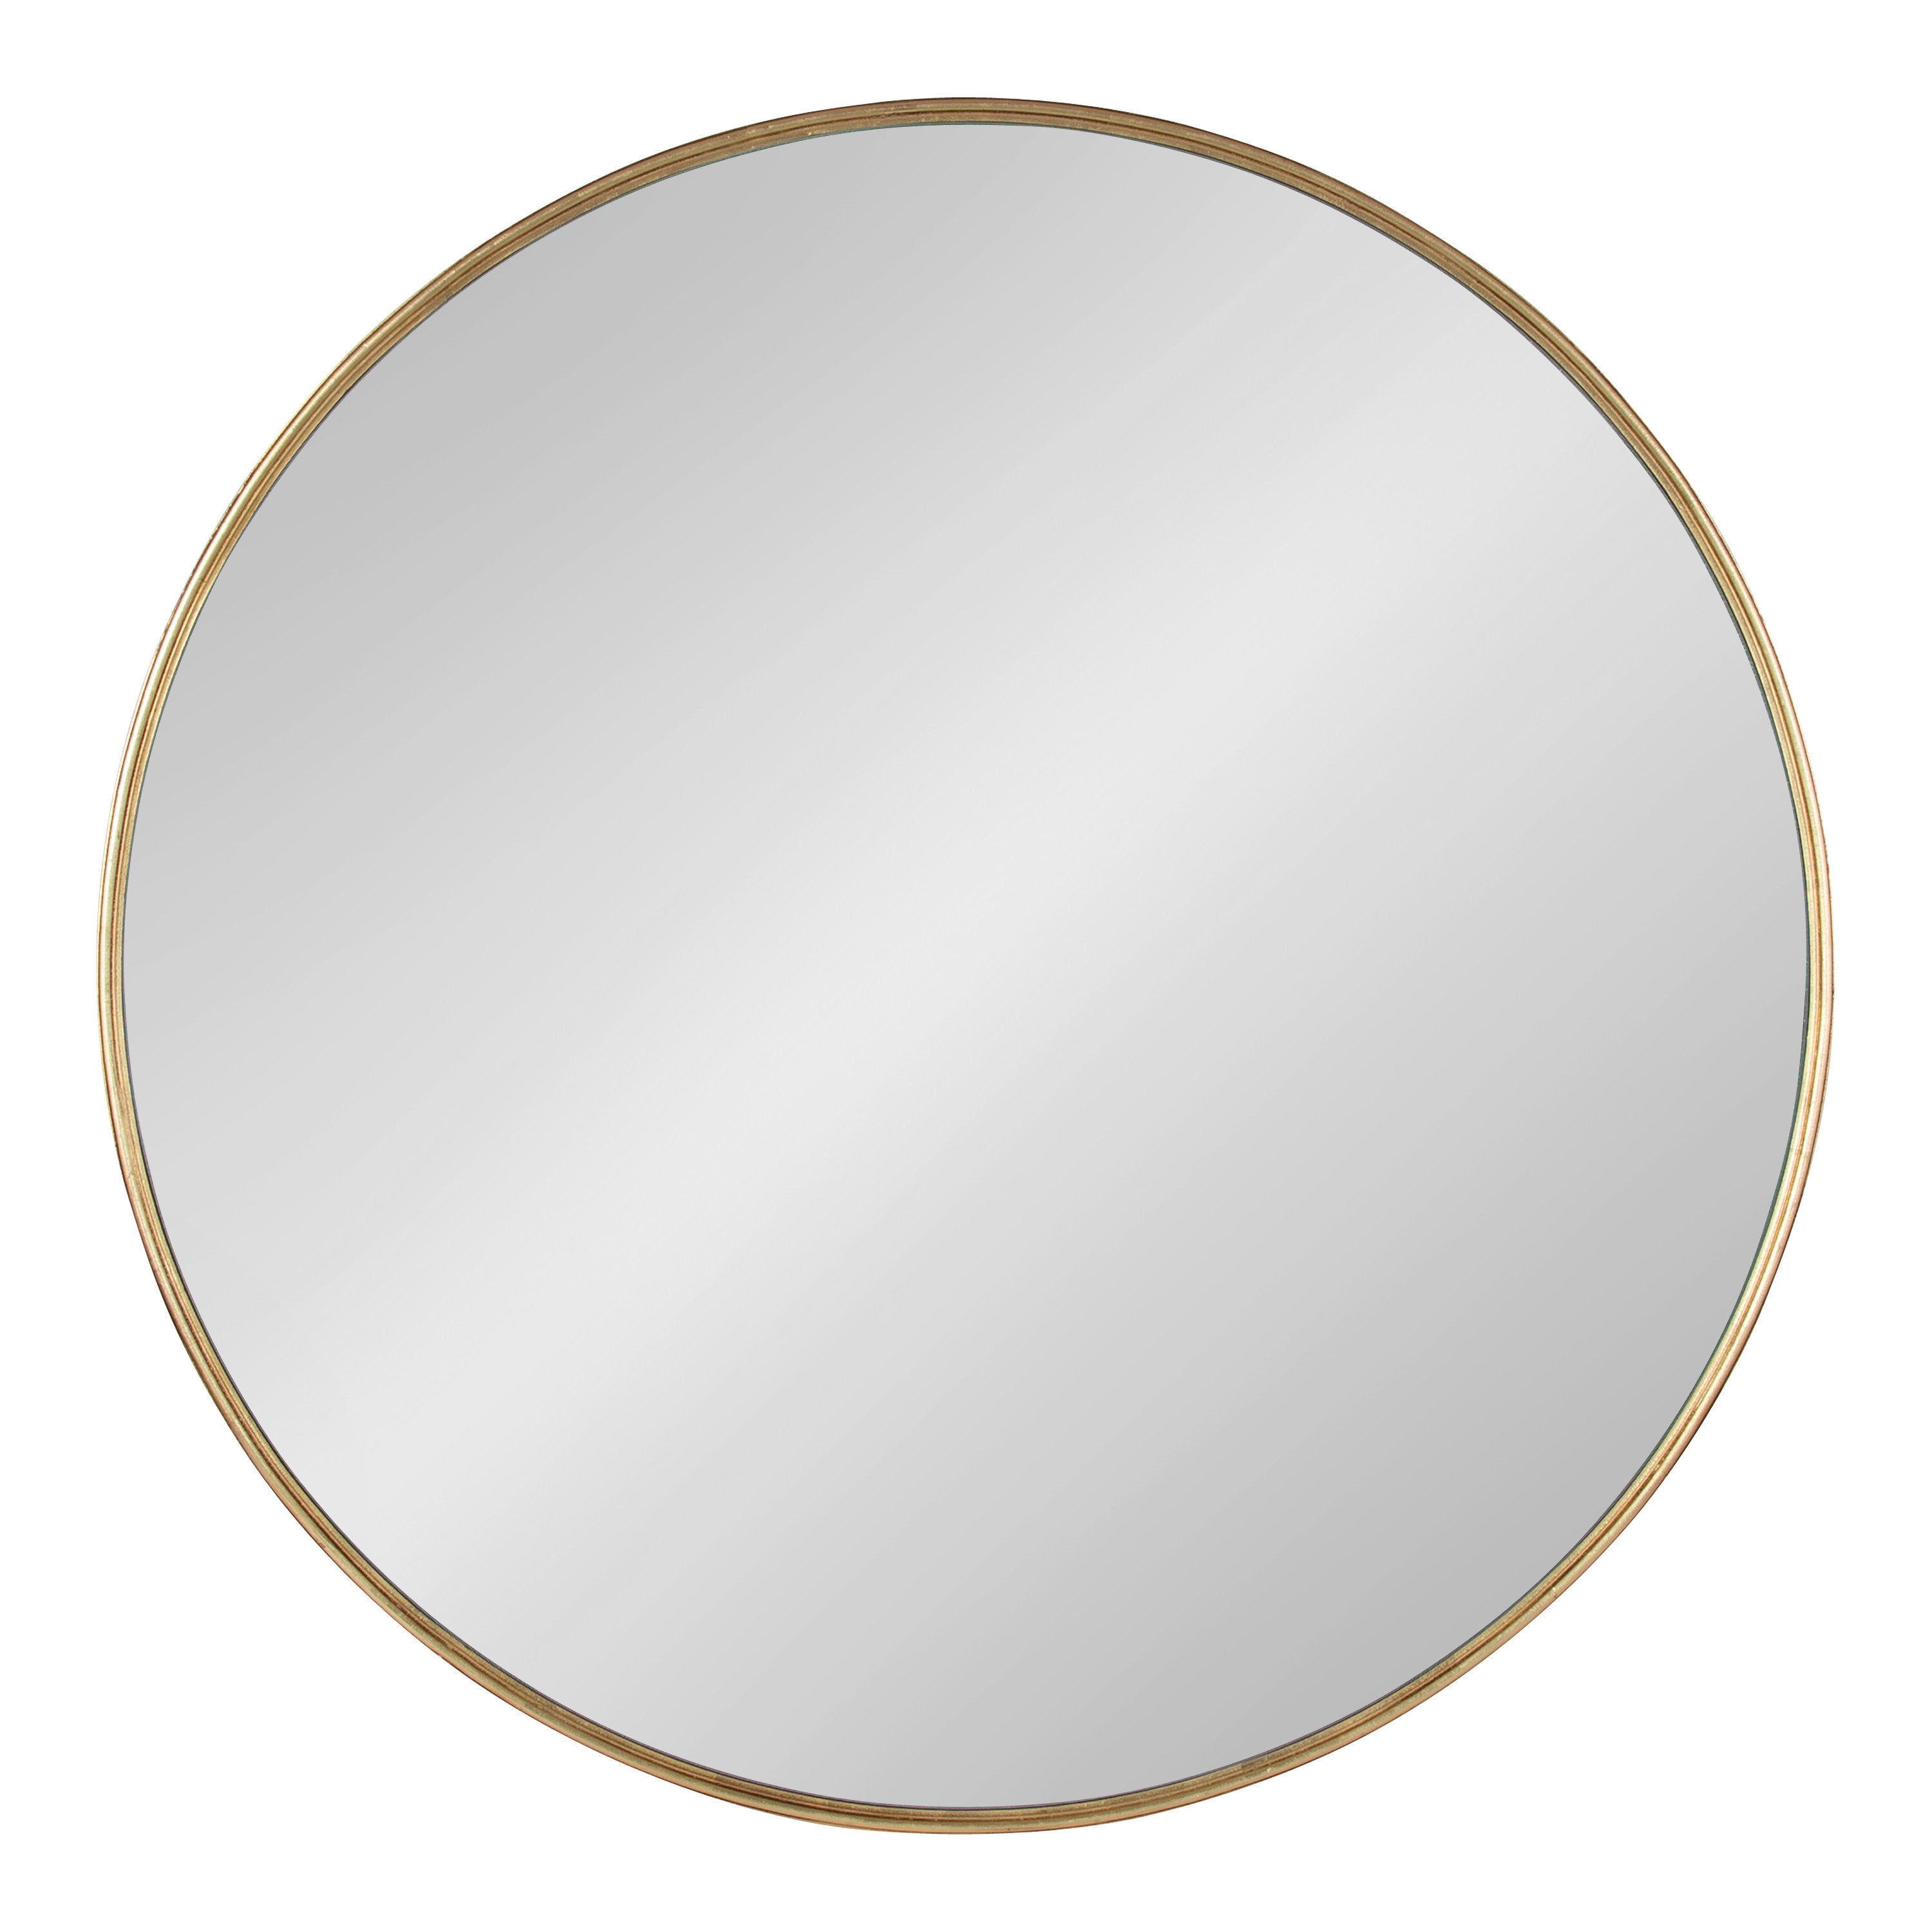 Caskill Round Framed Wall Mirror